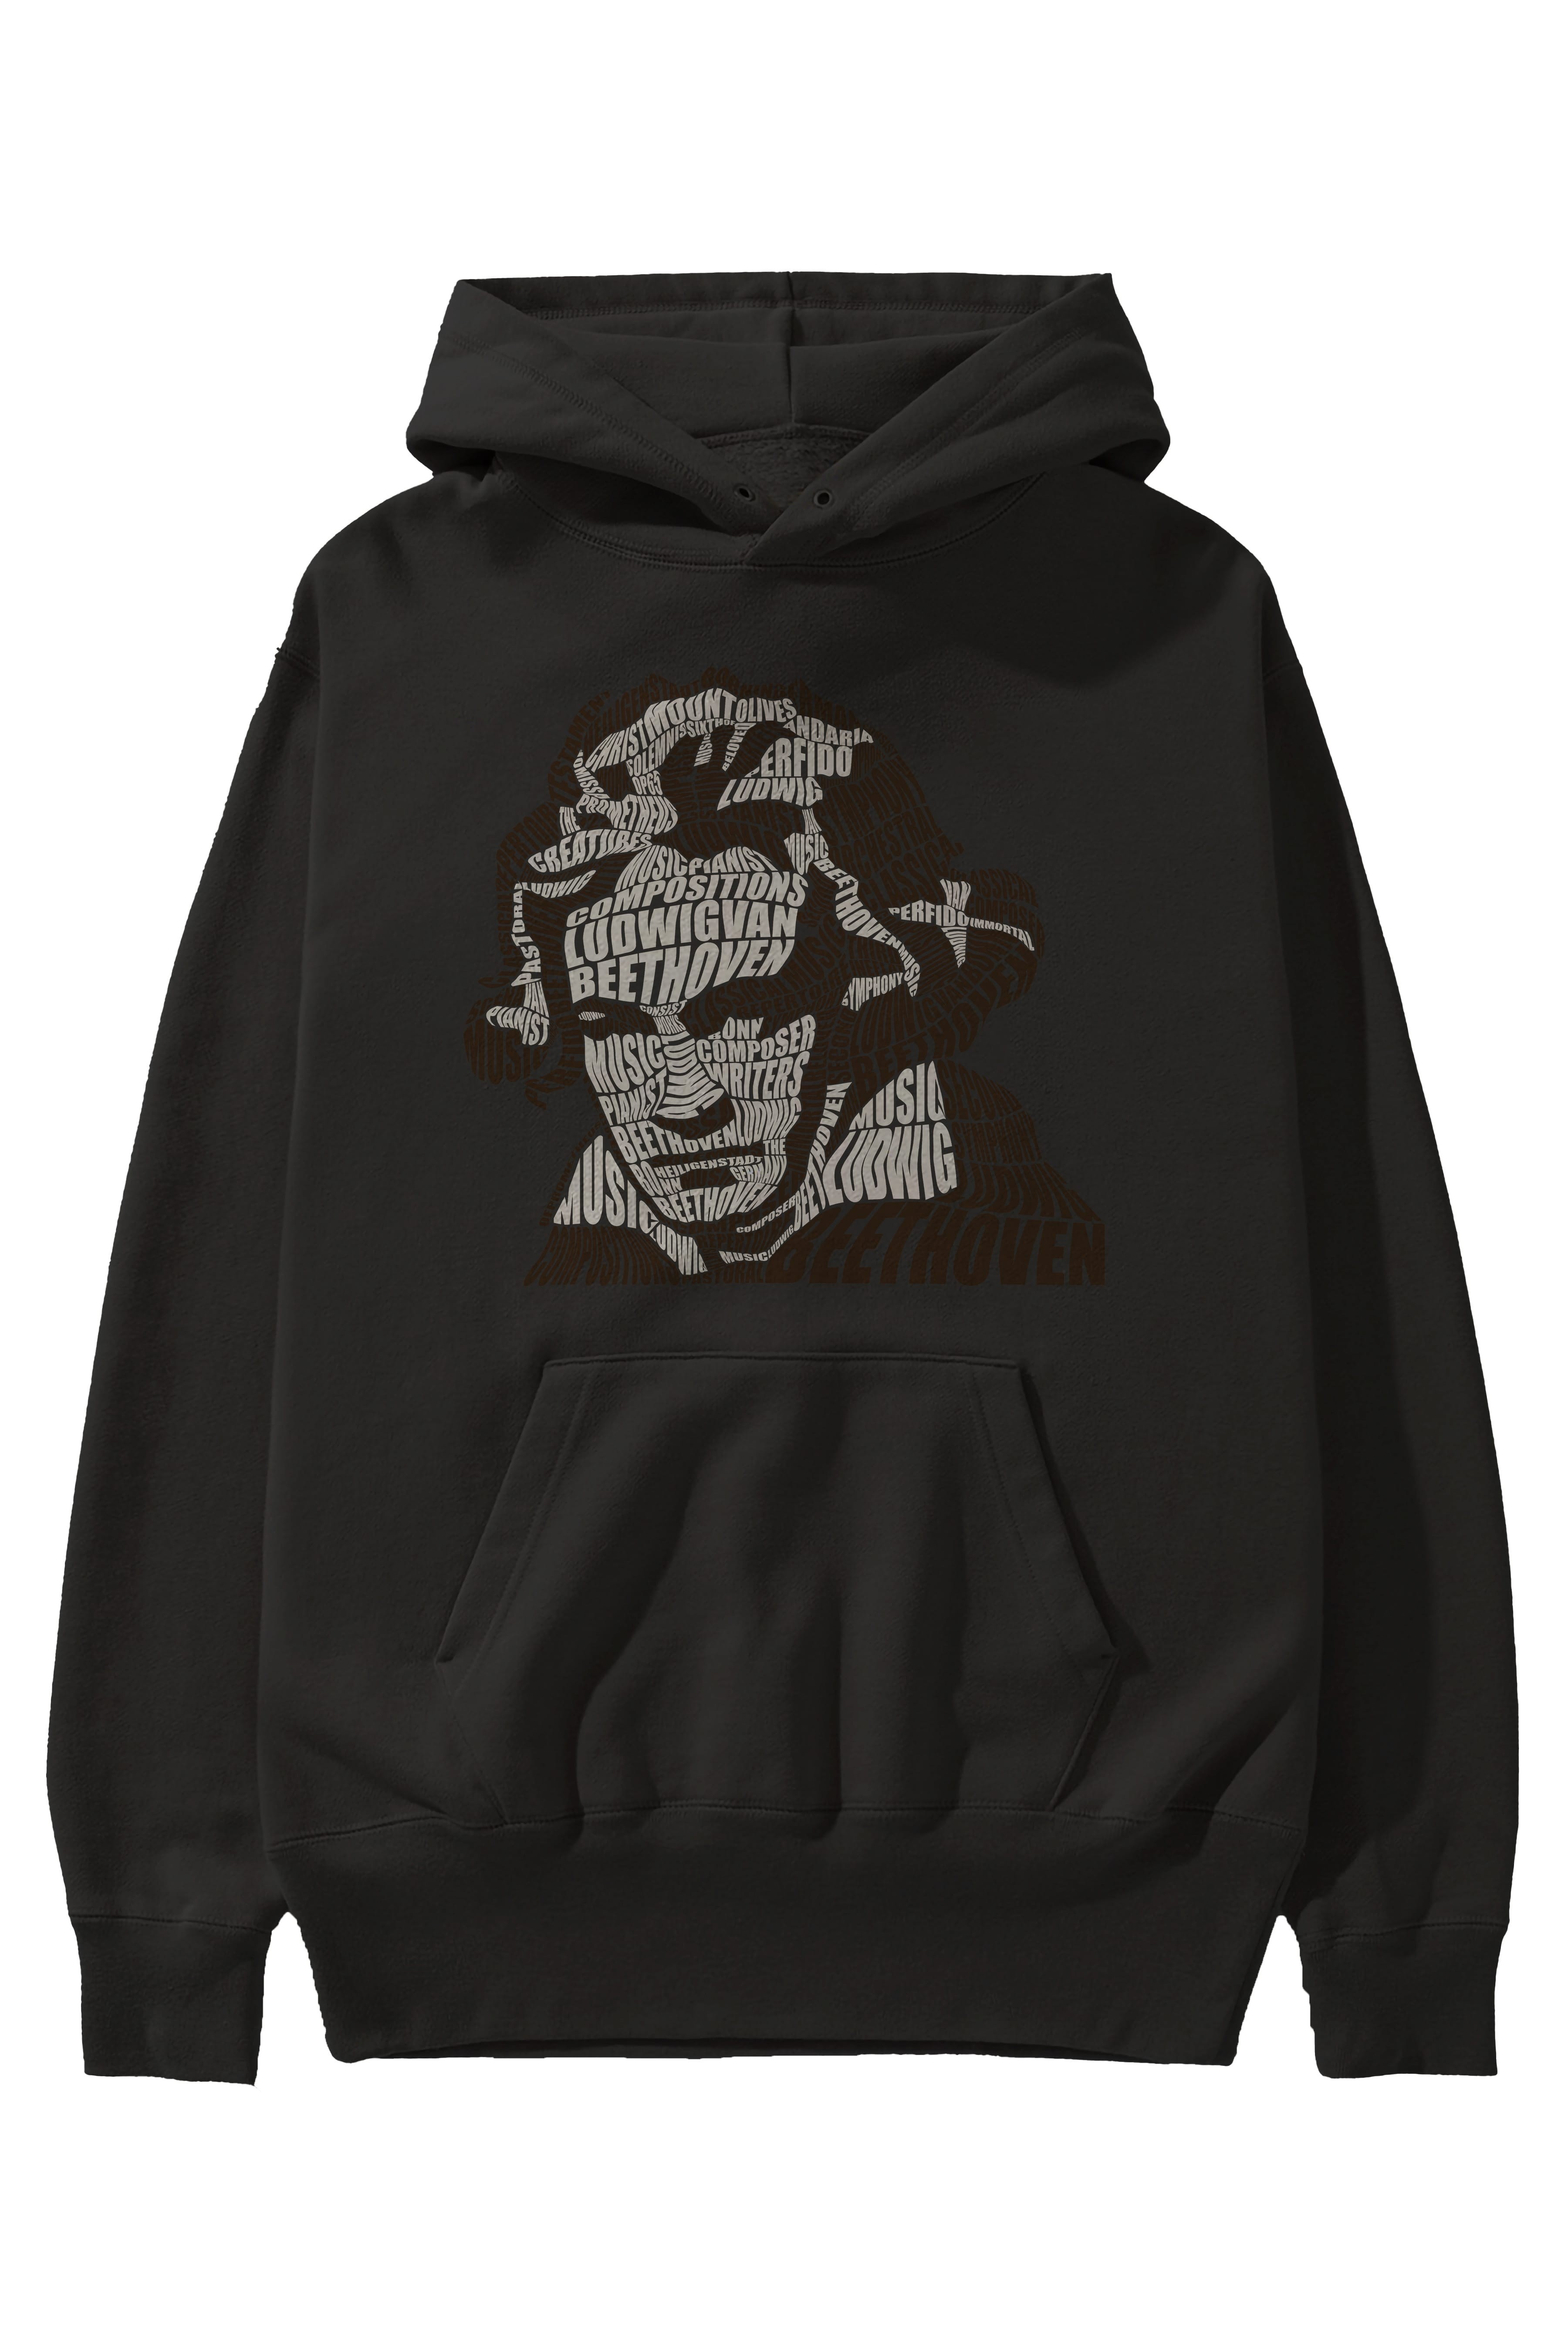 Ludwig van Beethoven Calligram Ön Baskılı Hoodie Oversize Kapüşonlu Sweatshirt Erkek Kadın Unisex